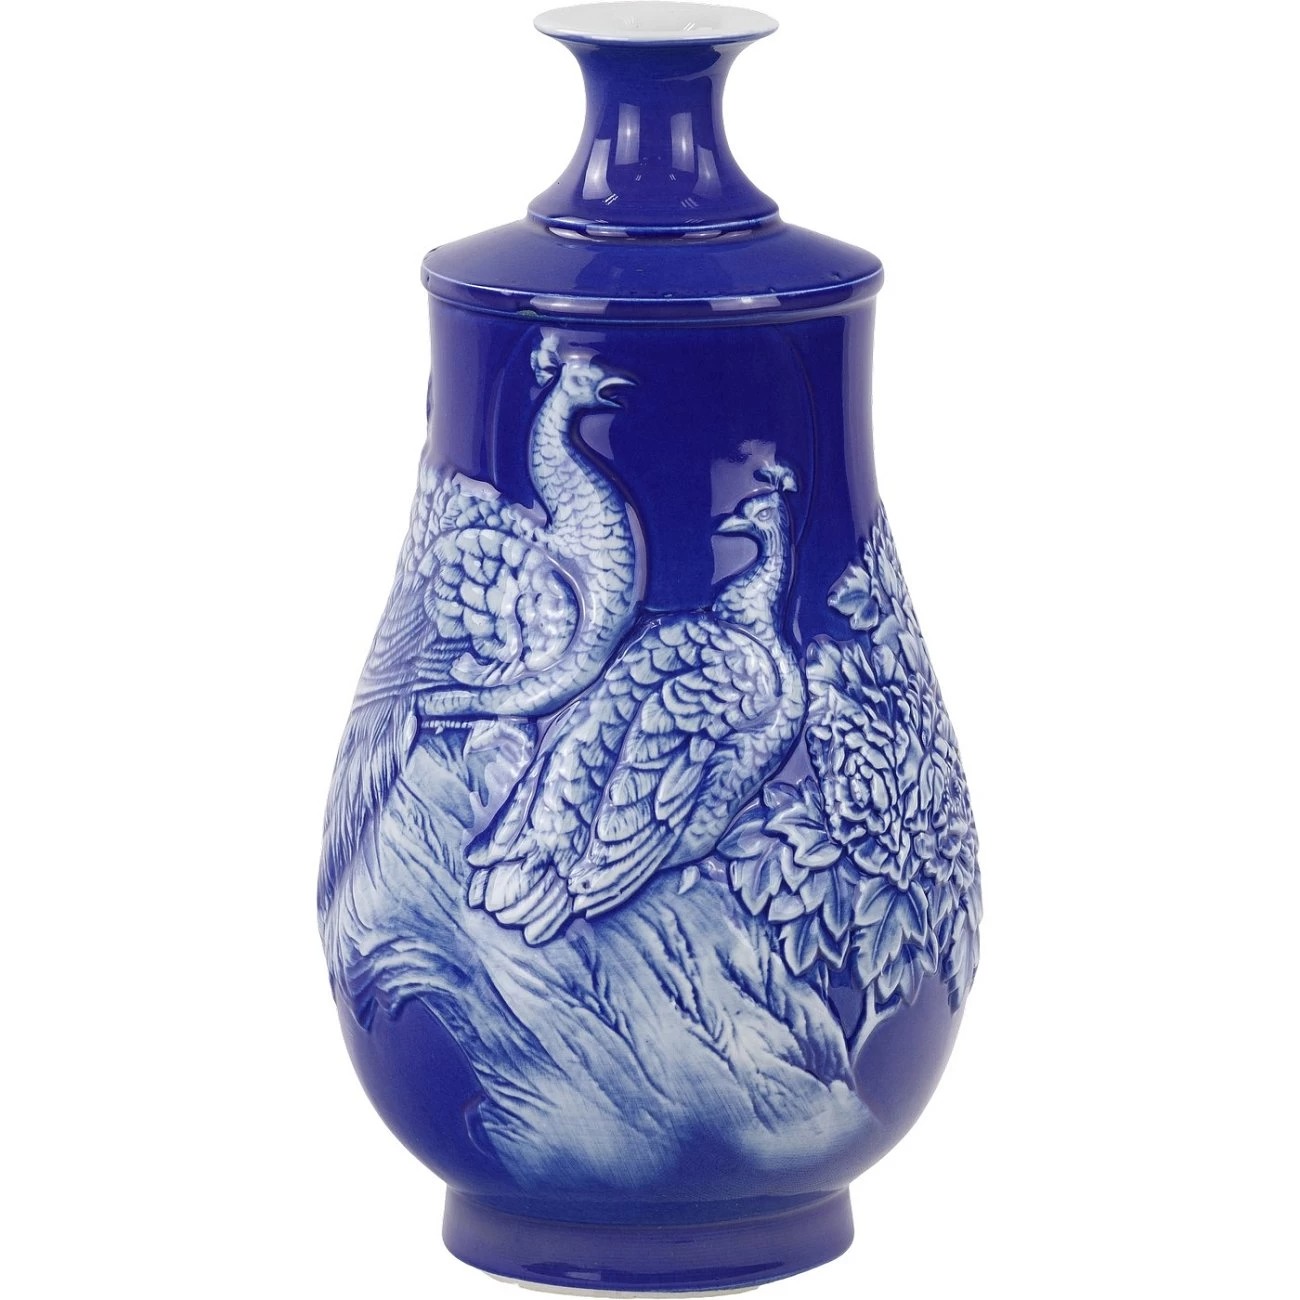 Ваза Glasar фарфоровая синяя 19х19х35 см ваза glasar фарфоровая на бронзовом основании 18x18x30см